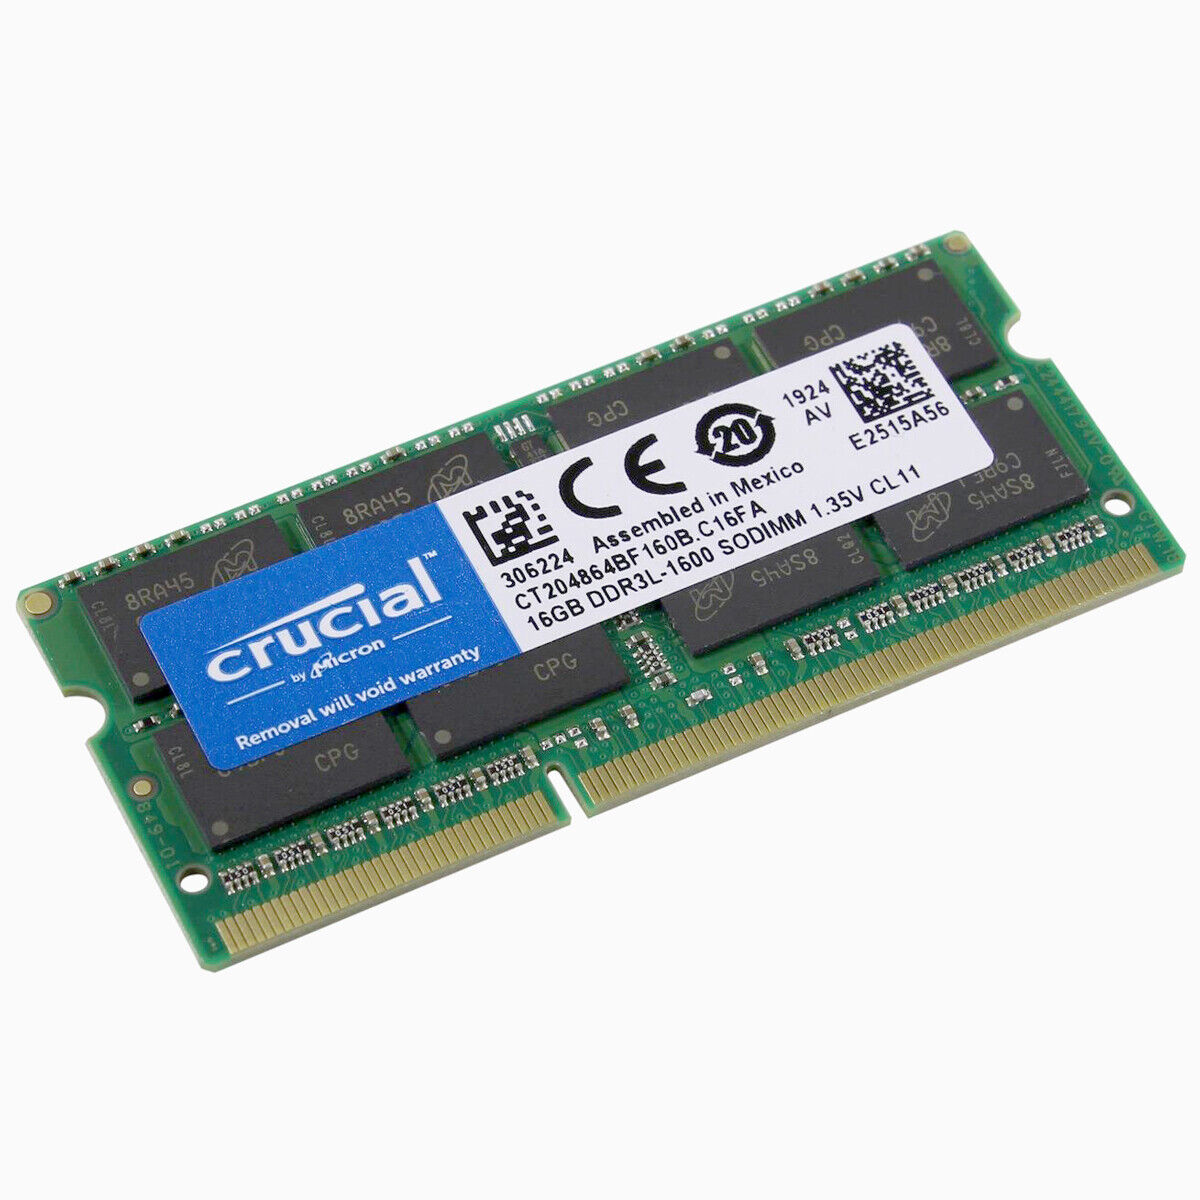 Crucial 16GB 1600MHz DDR3L SODIMM RAM Memory for Thinkpad X250 5TH GEN I3/I5/I7